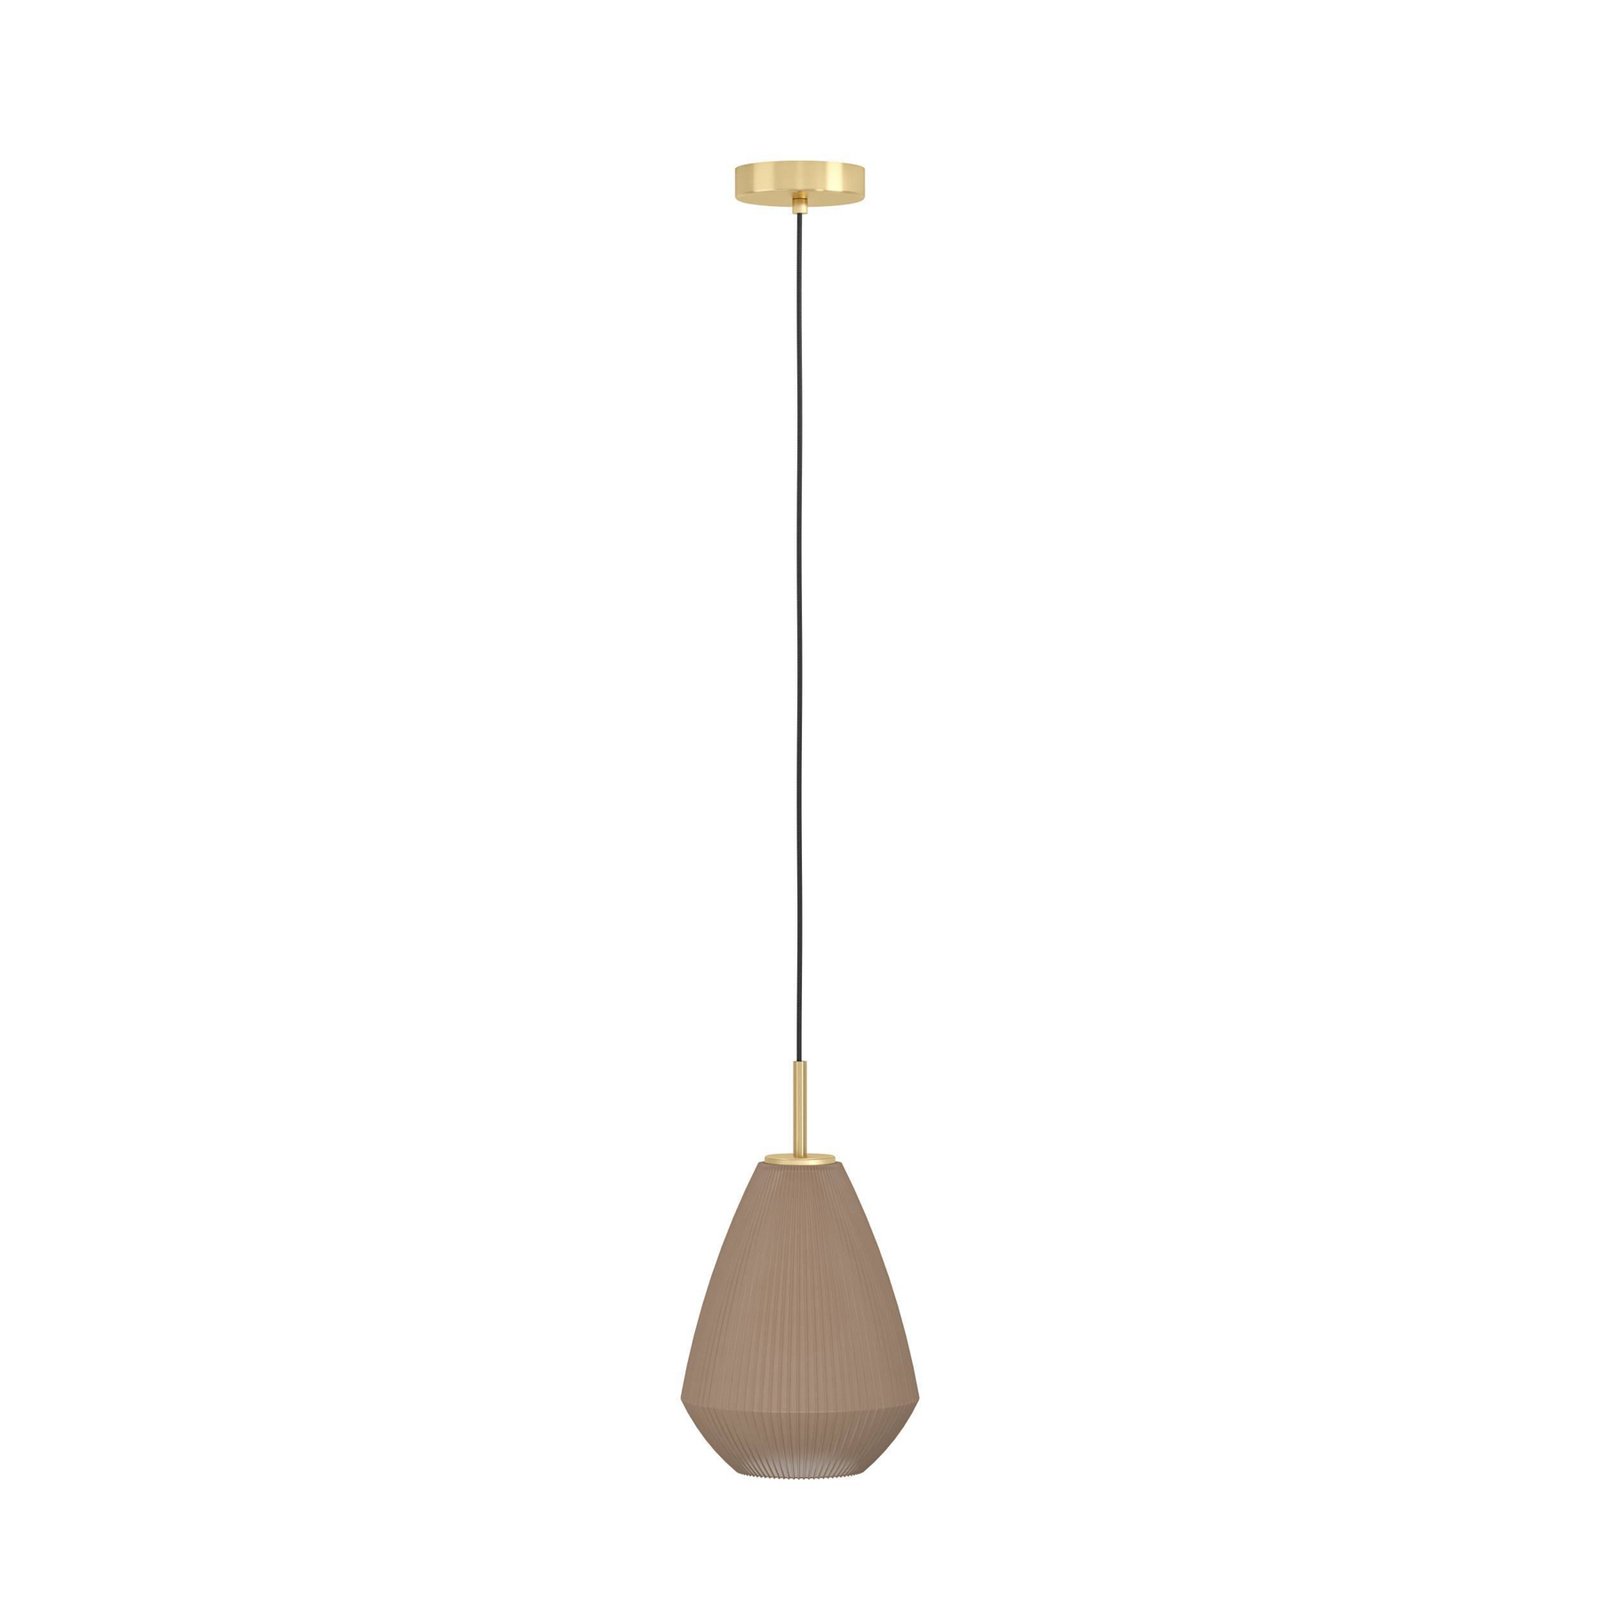 Caprarola hængelampe, Ø 20 cm, sandfarvet, glas/metal